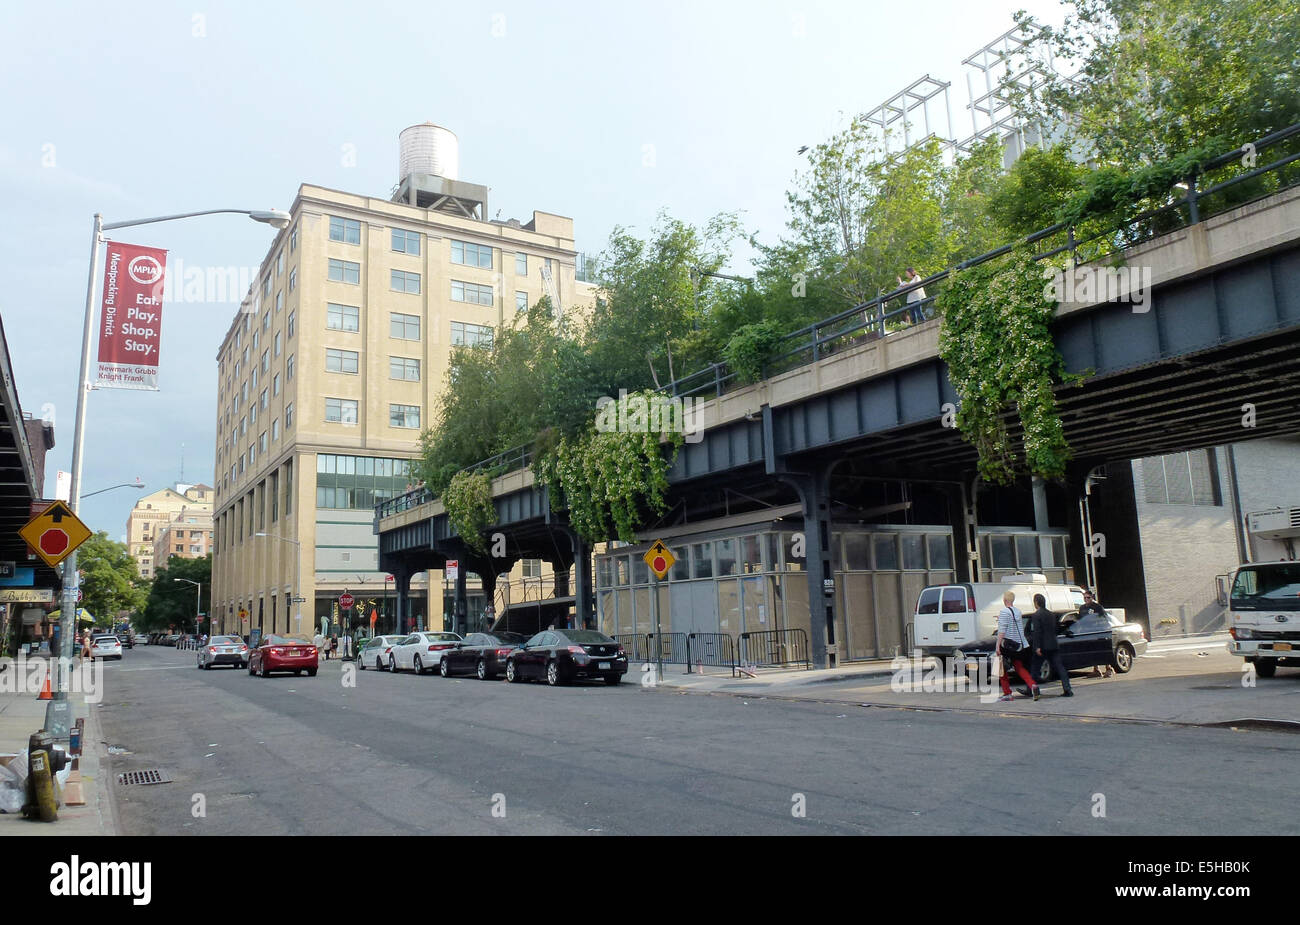 Der Anfang des High Line Park in der Gansevoort Street in New York City, aufgenommen am 25.06.2014. Der High Line Park ist eine erhaltene, aber nicht mehr als solche genutzte Hochbahntrasse im Westen von Manhattan. Der erste Bauabschnitt wurde 2009 eröffnet und im Herbst 2014 soll der Park komplett fertig sein. Er ist einer der neuesten und ungewöhnlichsten Parks in New York und schon eine Sehenswürdigkeit. Er ist fast drei Kilometer lang und ist nur ungefähr 20 Meter breit. High Line liegt 10 Meter über der Strasse zwischen der 10. und 11. Avenue und geht von der Gansevoort Strasse im Süden Stock Photo